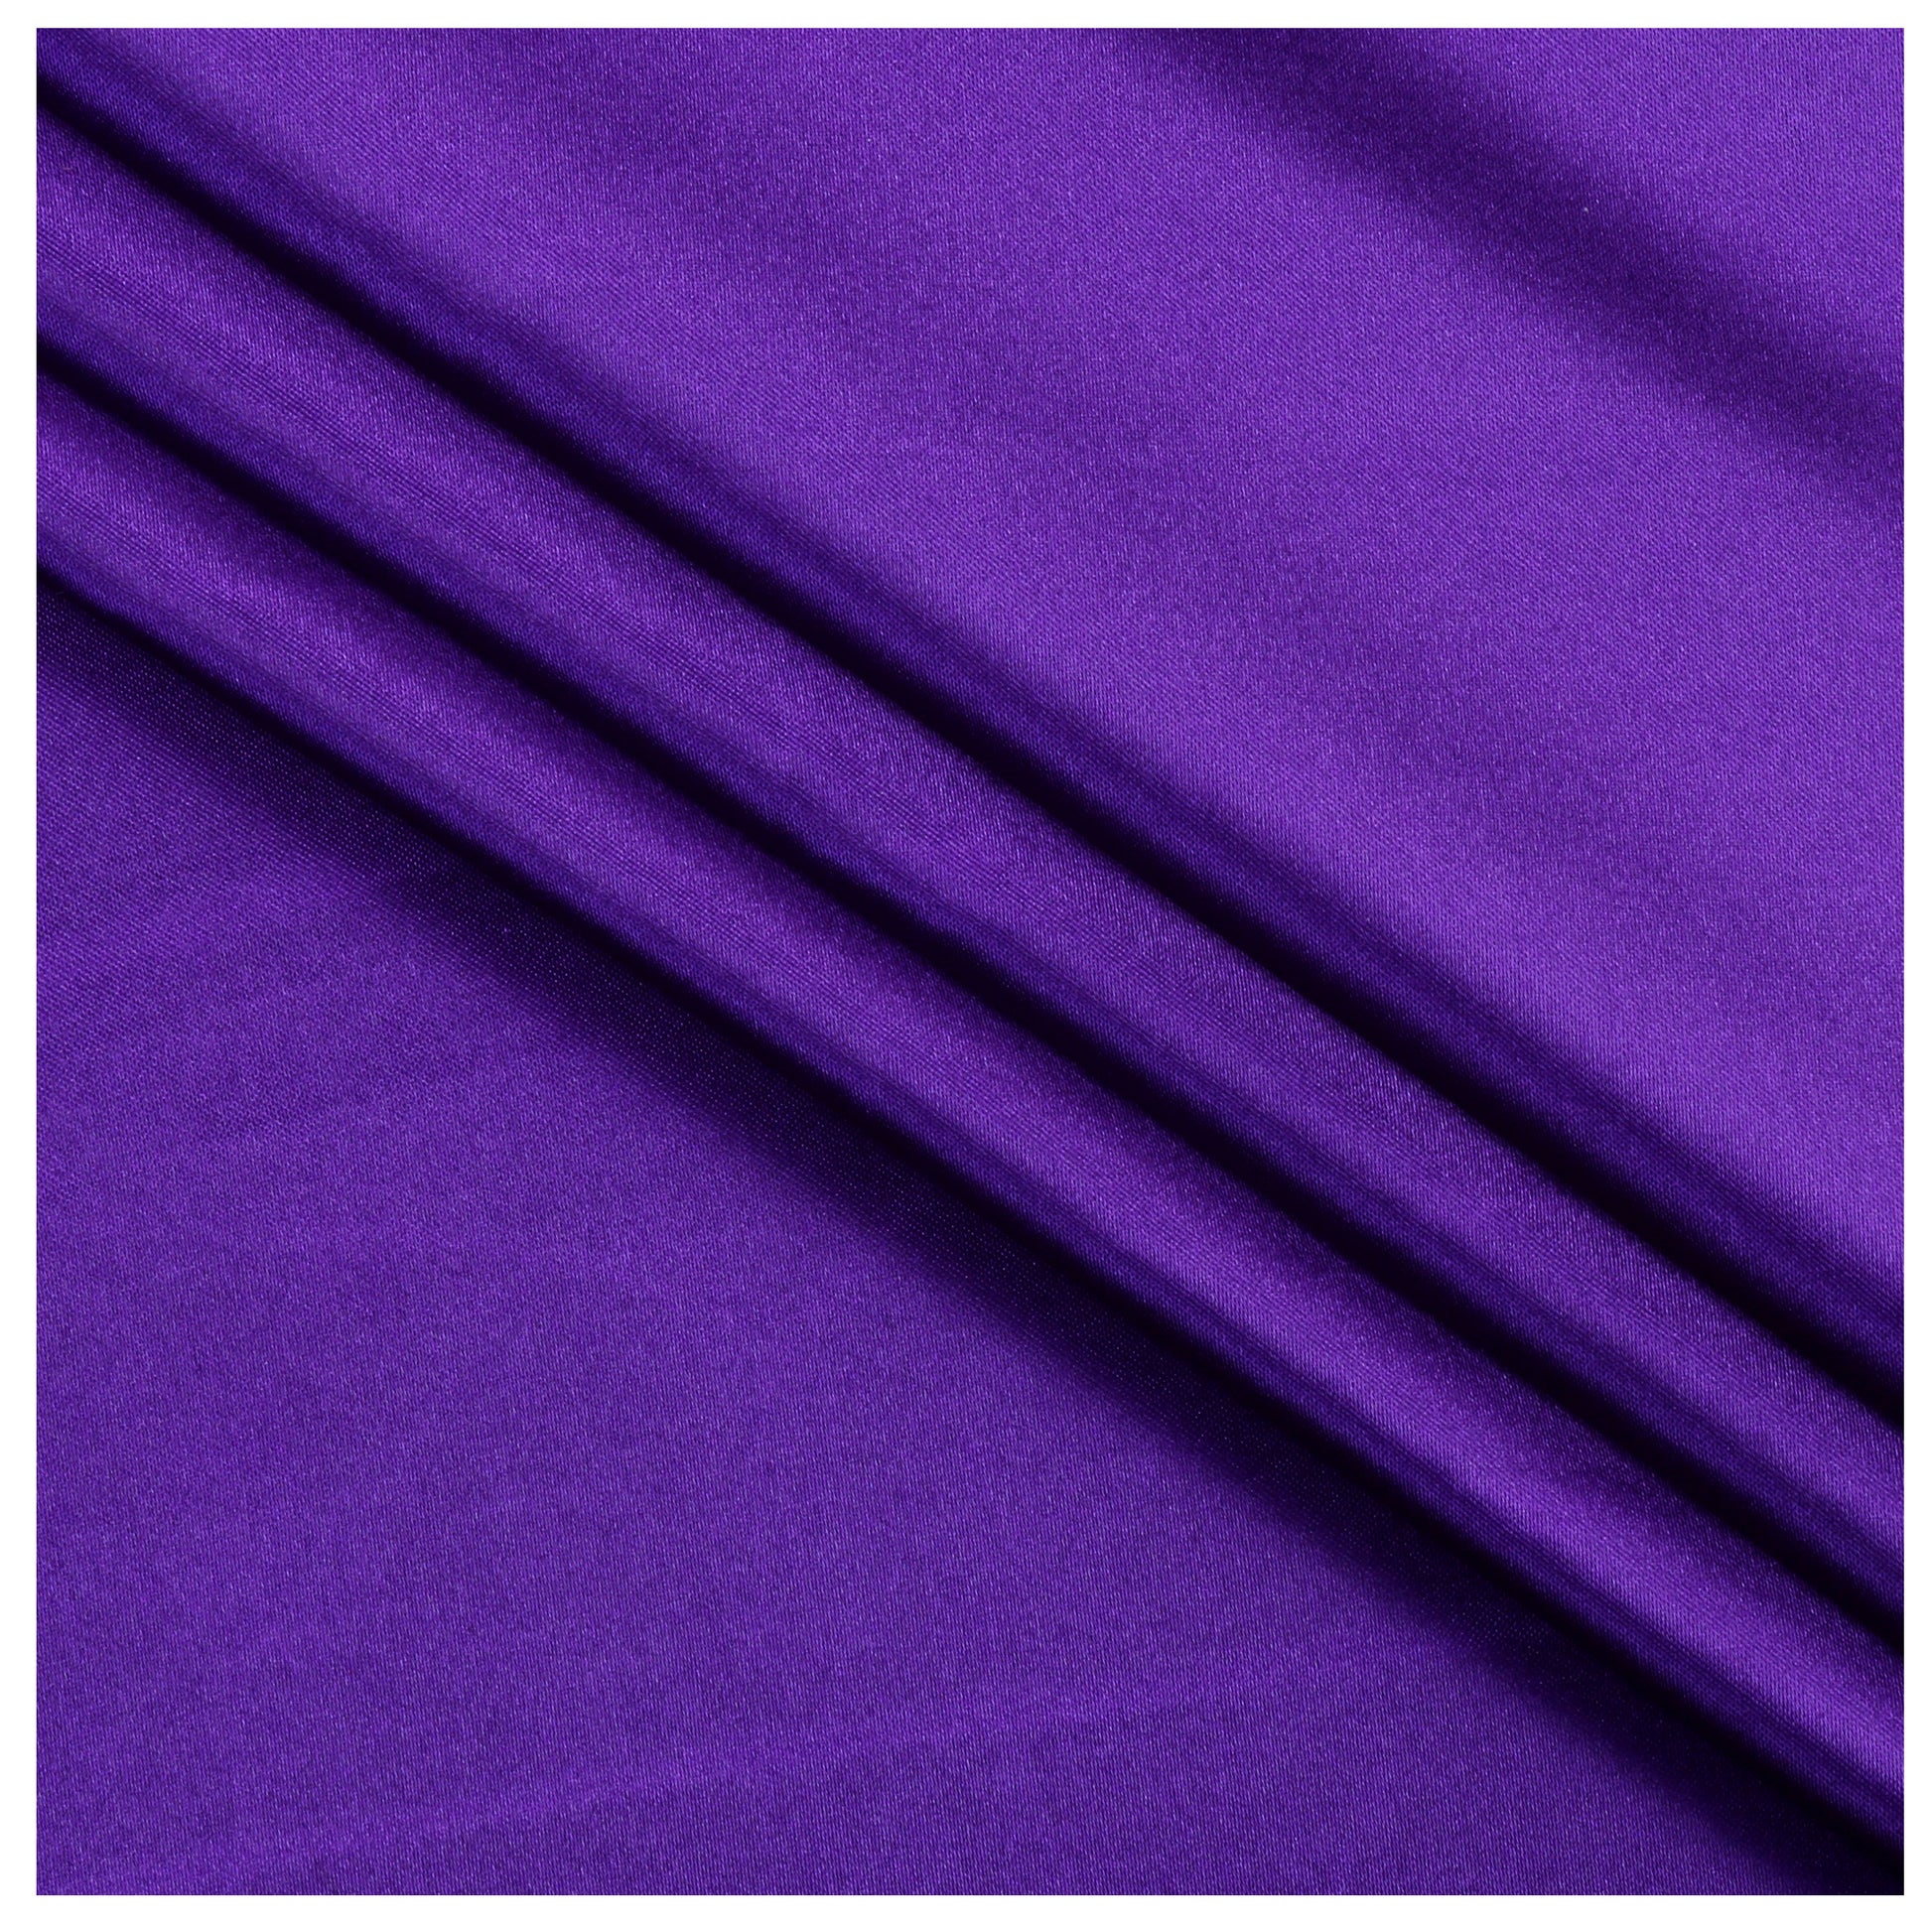 Cadbury Purple,48692c38-08cc-4c45-a424-905f297ce327